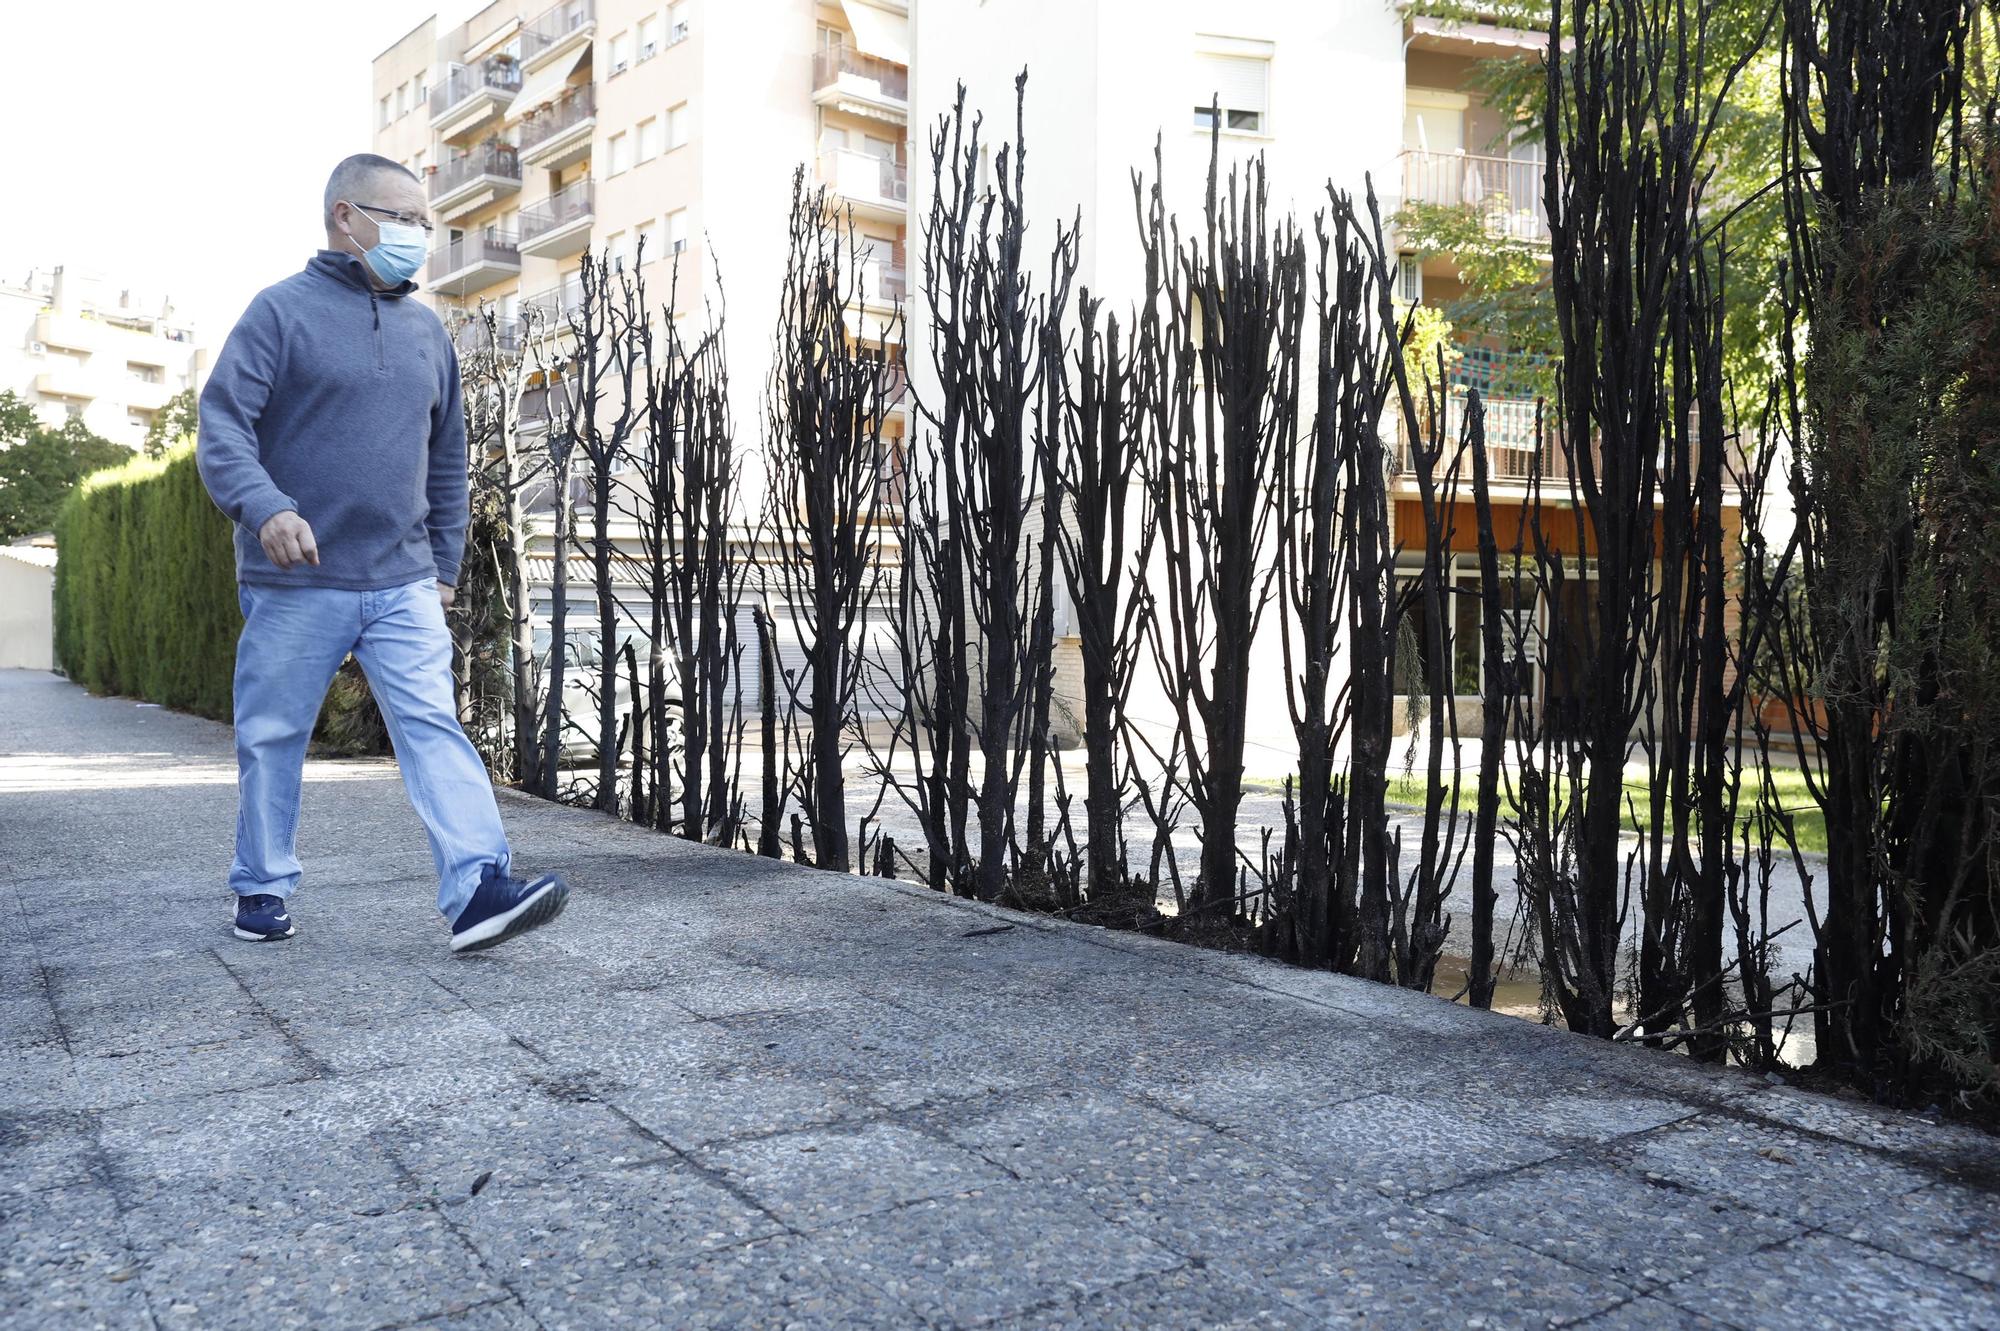 Cremen sis contenidors a Girona i les flames afecten dos cotxes i una tanca